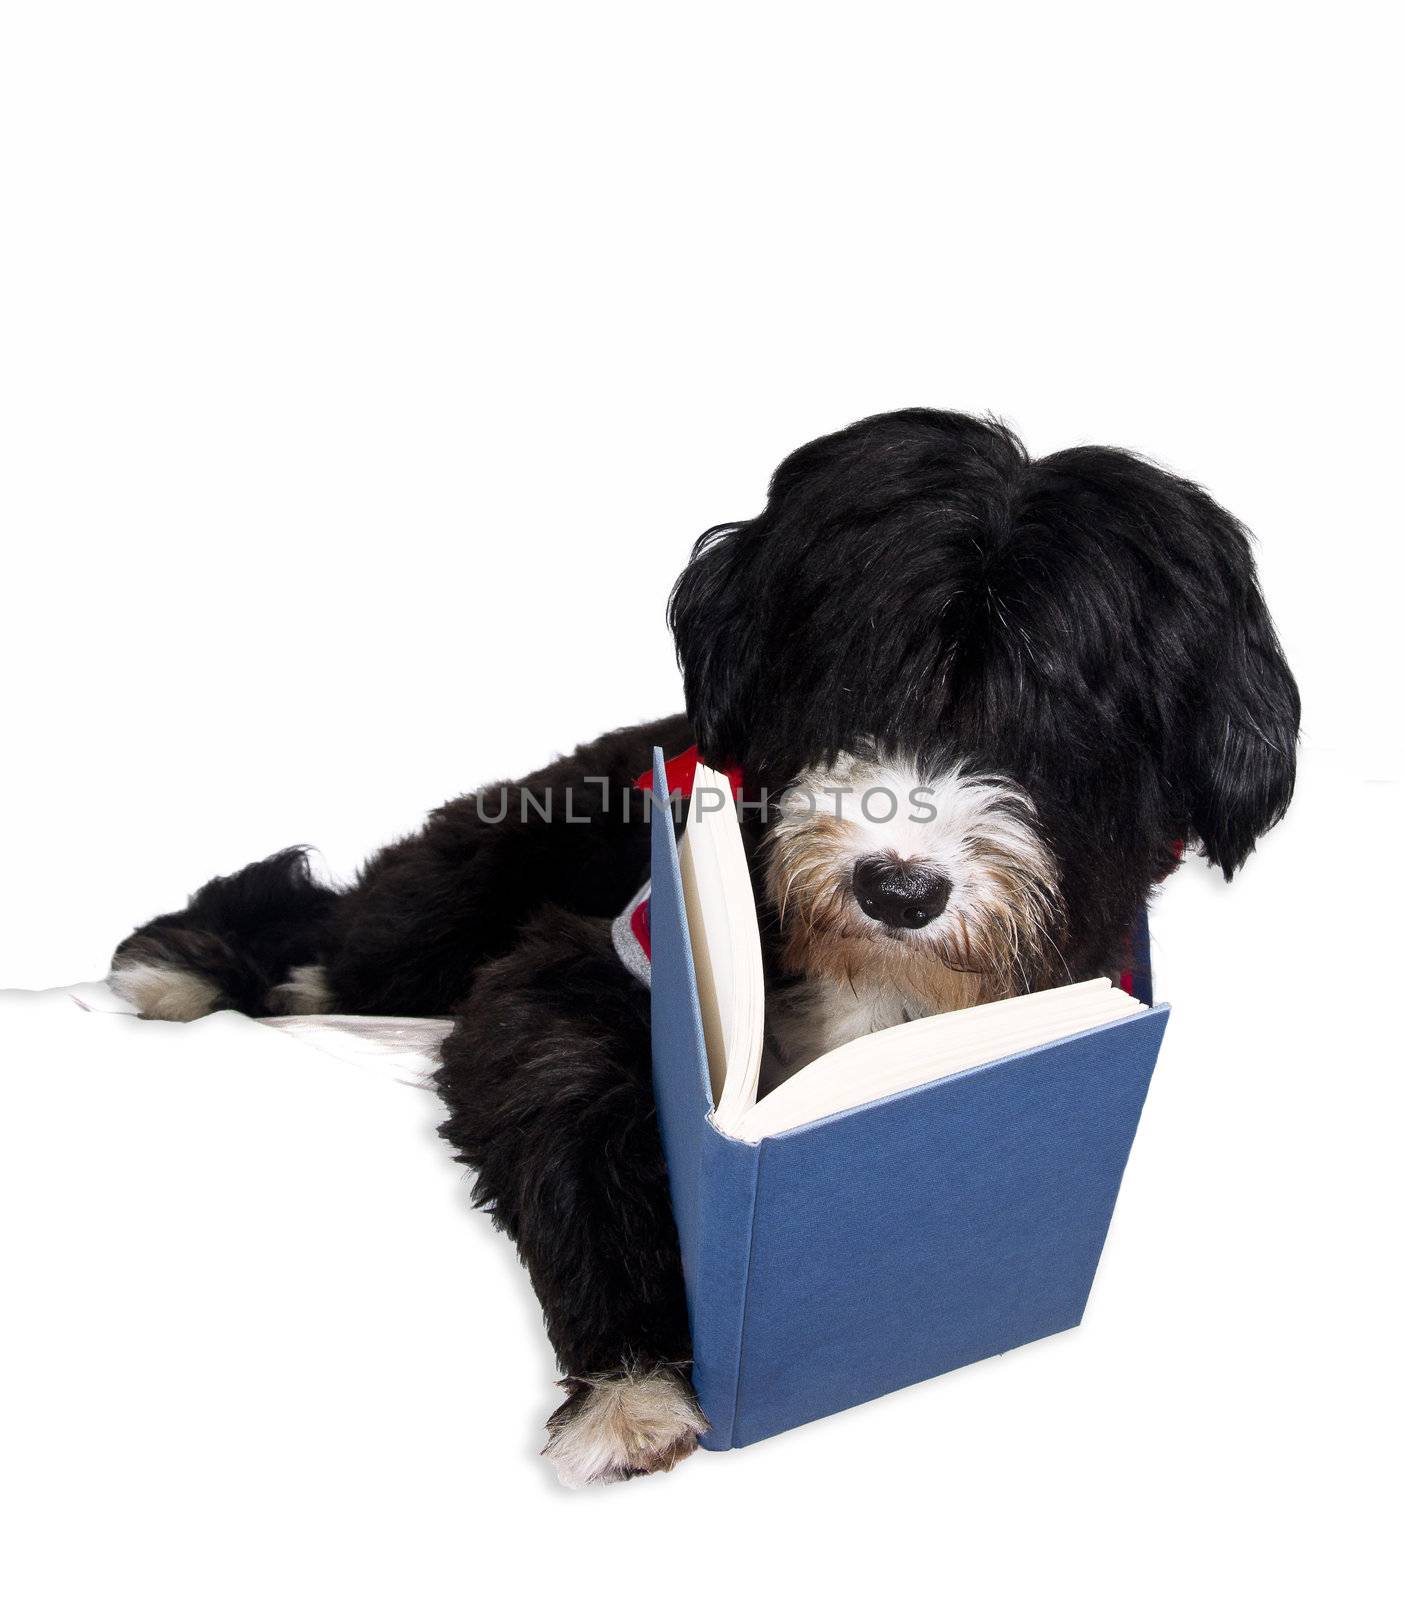 a dog read book by danilobiancalana